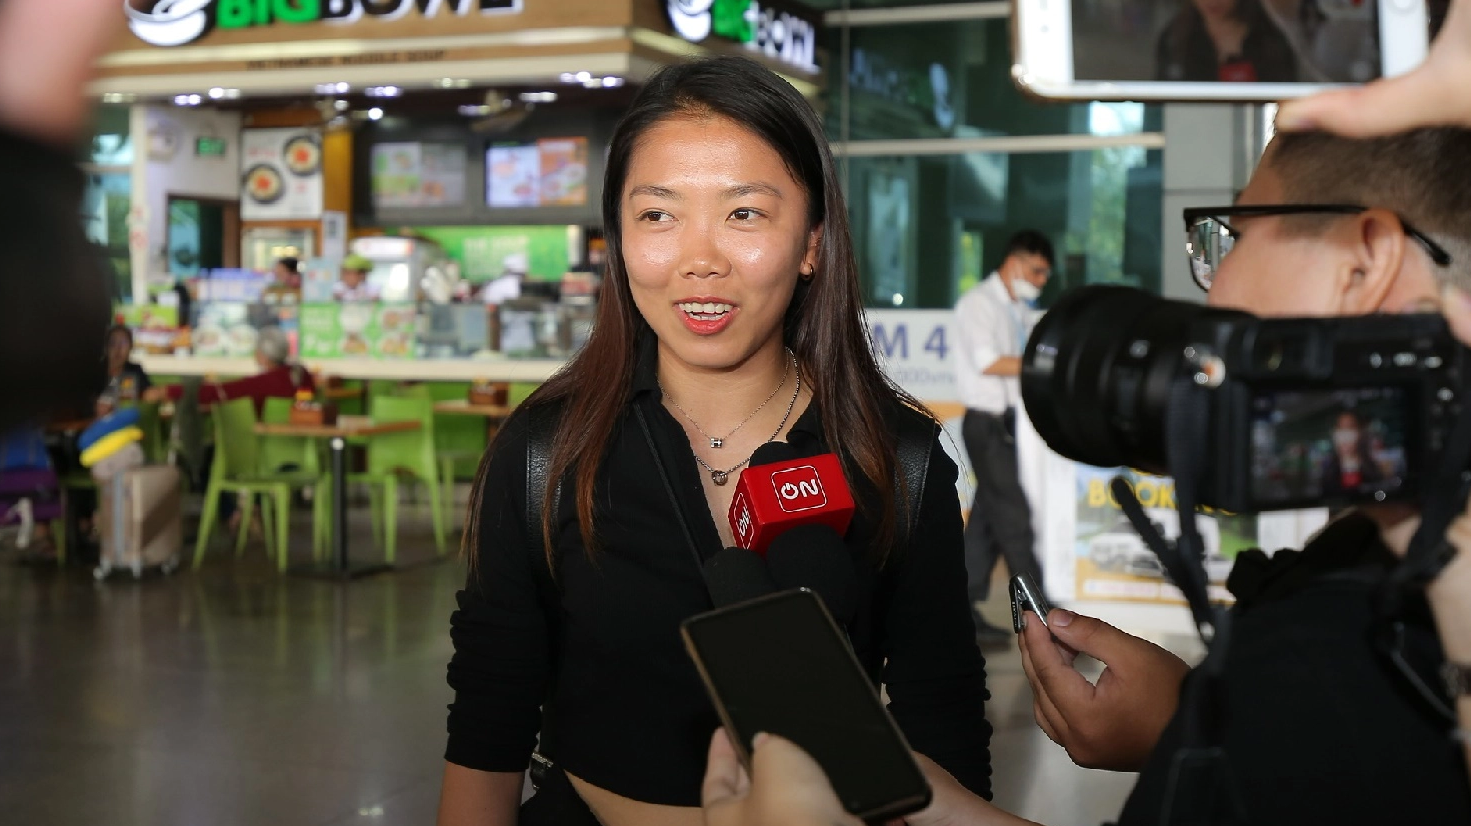 Ghi 6 bàn ở Bồ Đào Nha, Huỳnh Như vẫn khiêm tốn: 'Tôi chưa xem đó là thành công'